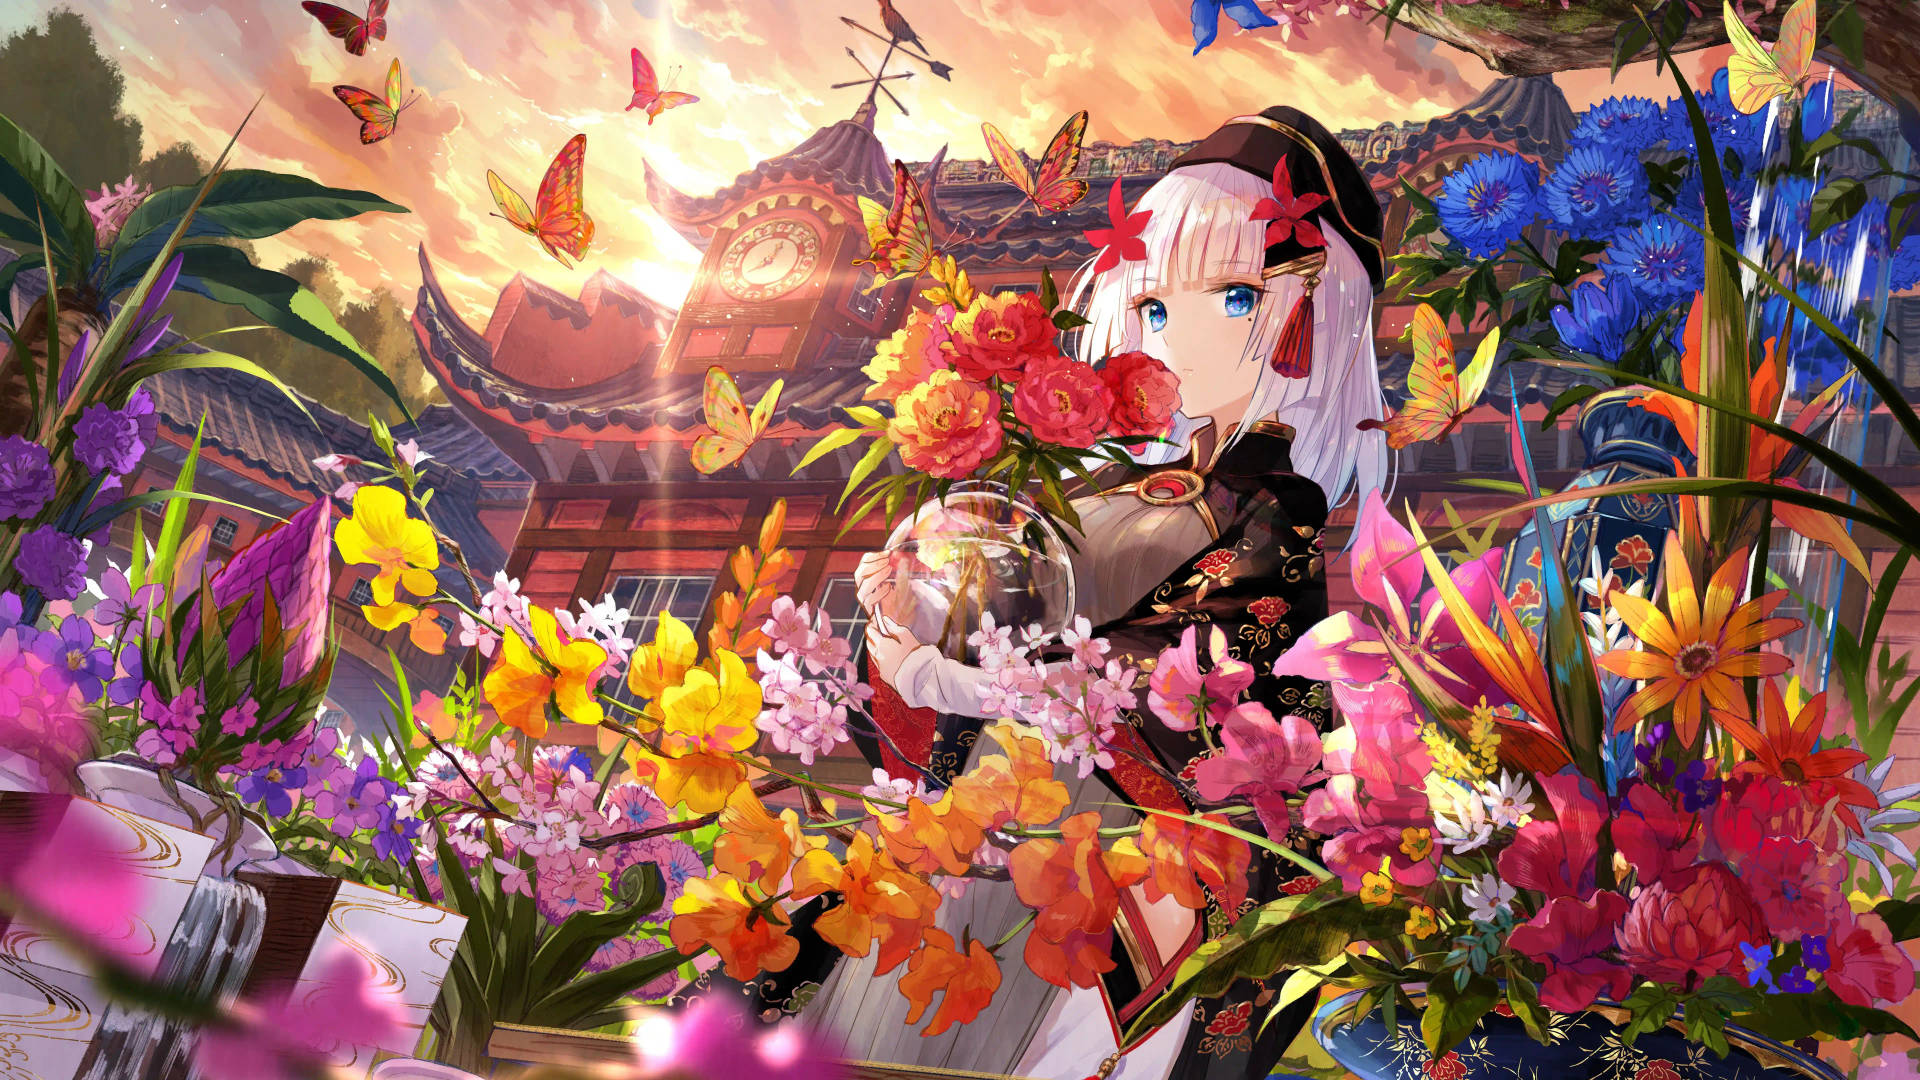 8k Anime Girl And Flowers Wallpaper